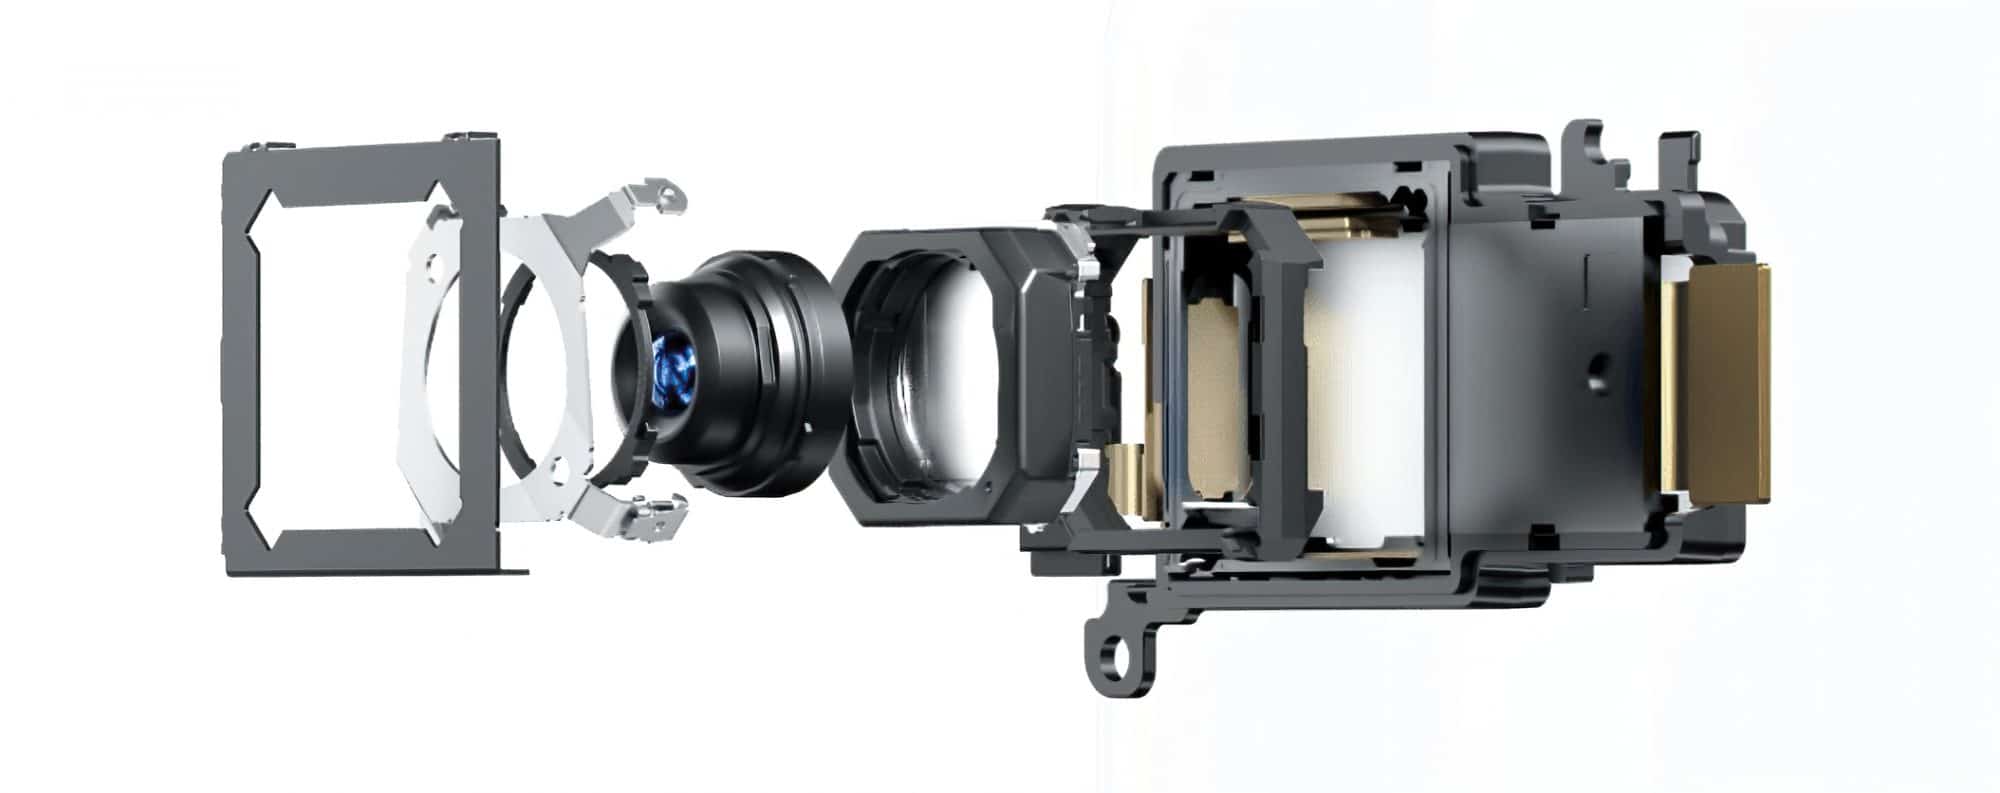 รีวิว Vivo X50 Pro 5G ยกระดับประสบการณ์กล้องด้วยกิมบอล เต็มอิ่มความบันเทิงด้วยชิปเสียงและหน้าจอที่สวยงาม 7